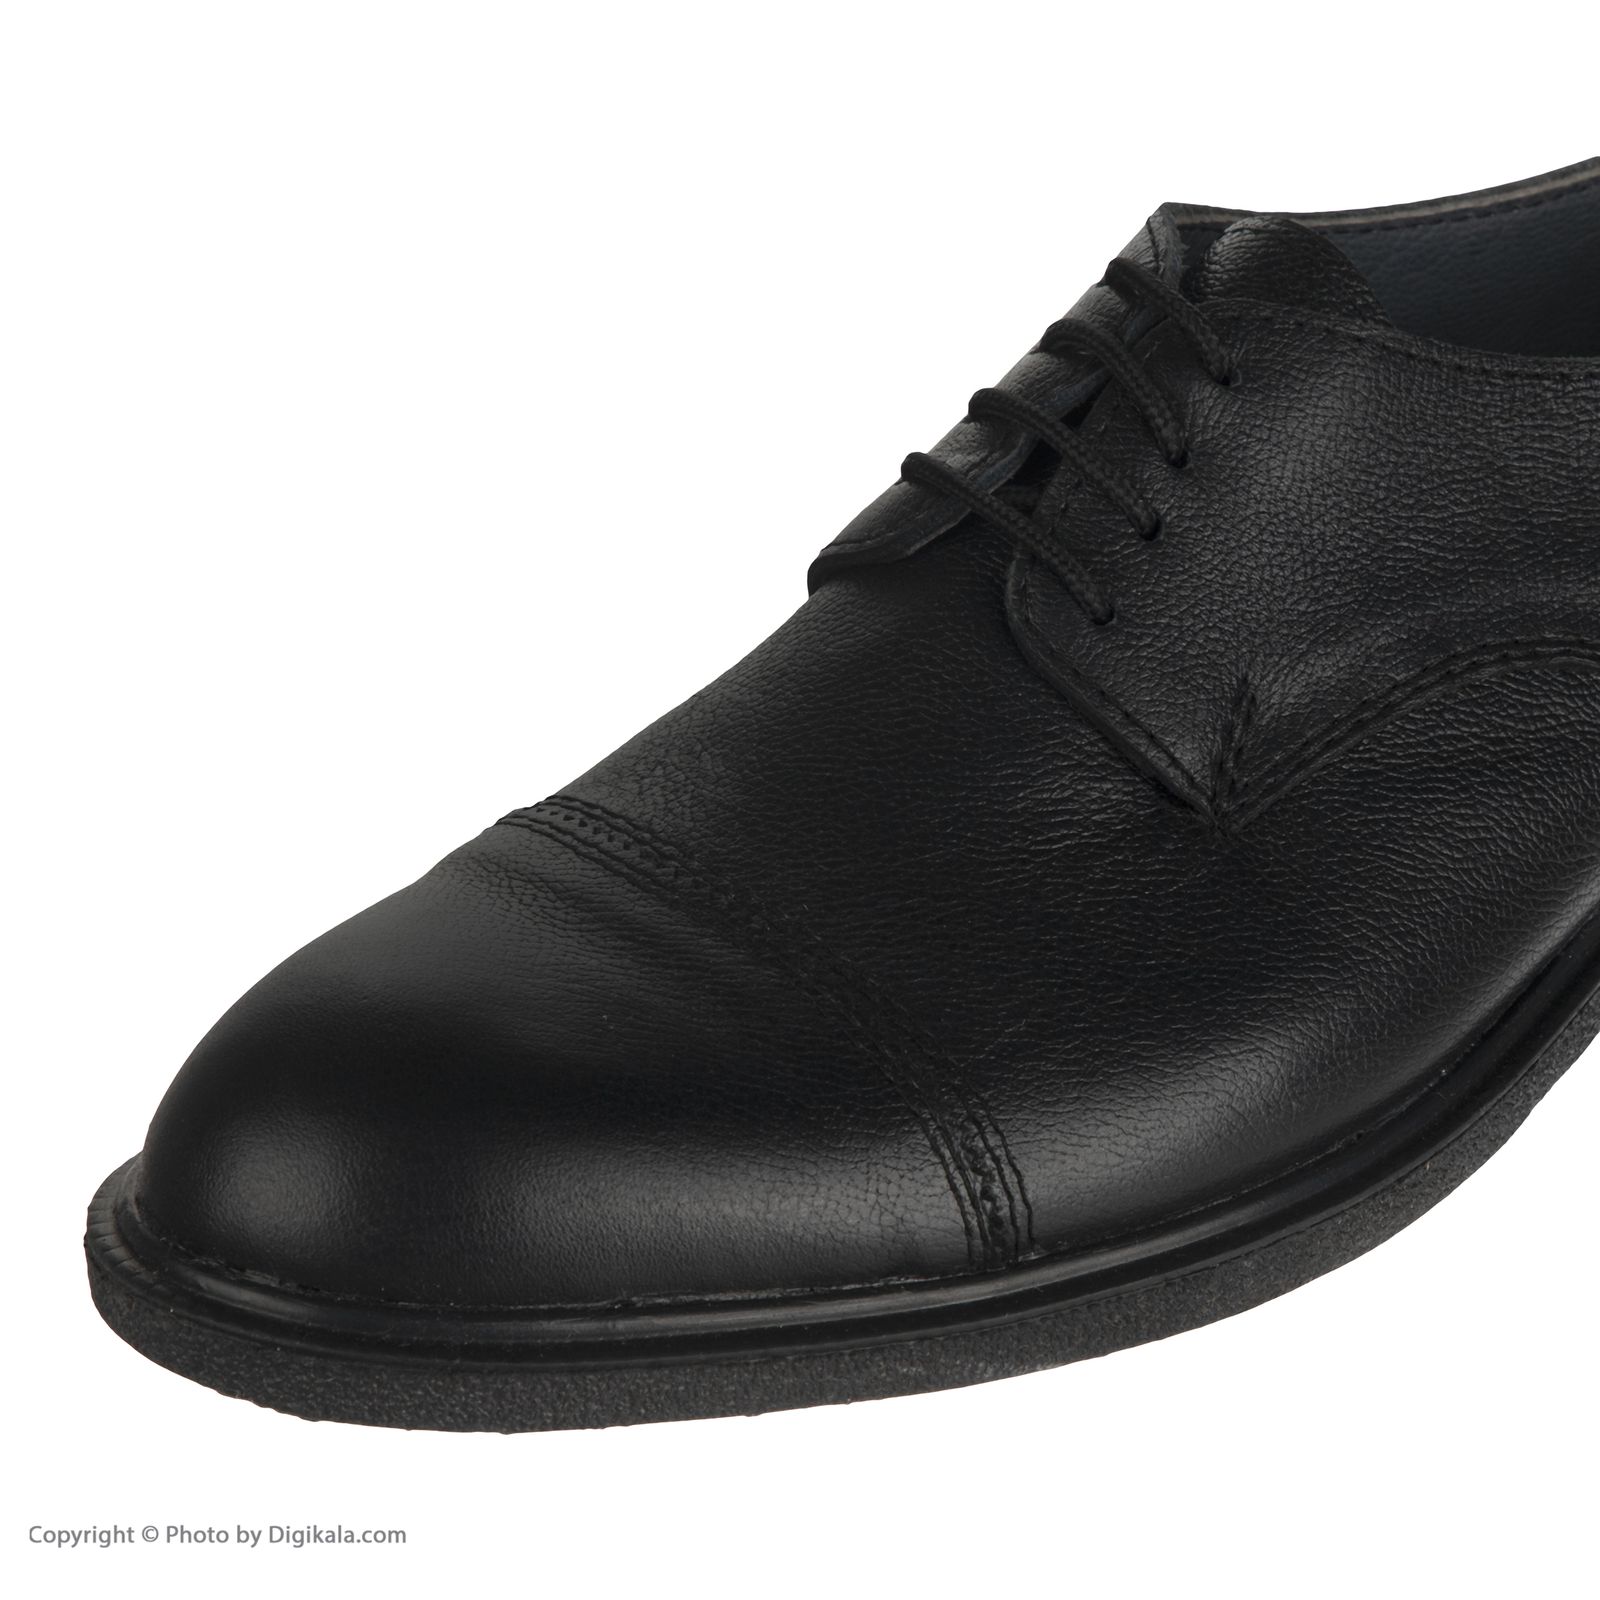  کفش مردانه سوته مدل 4870F503101 -  - 7